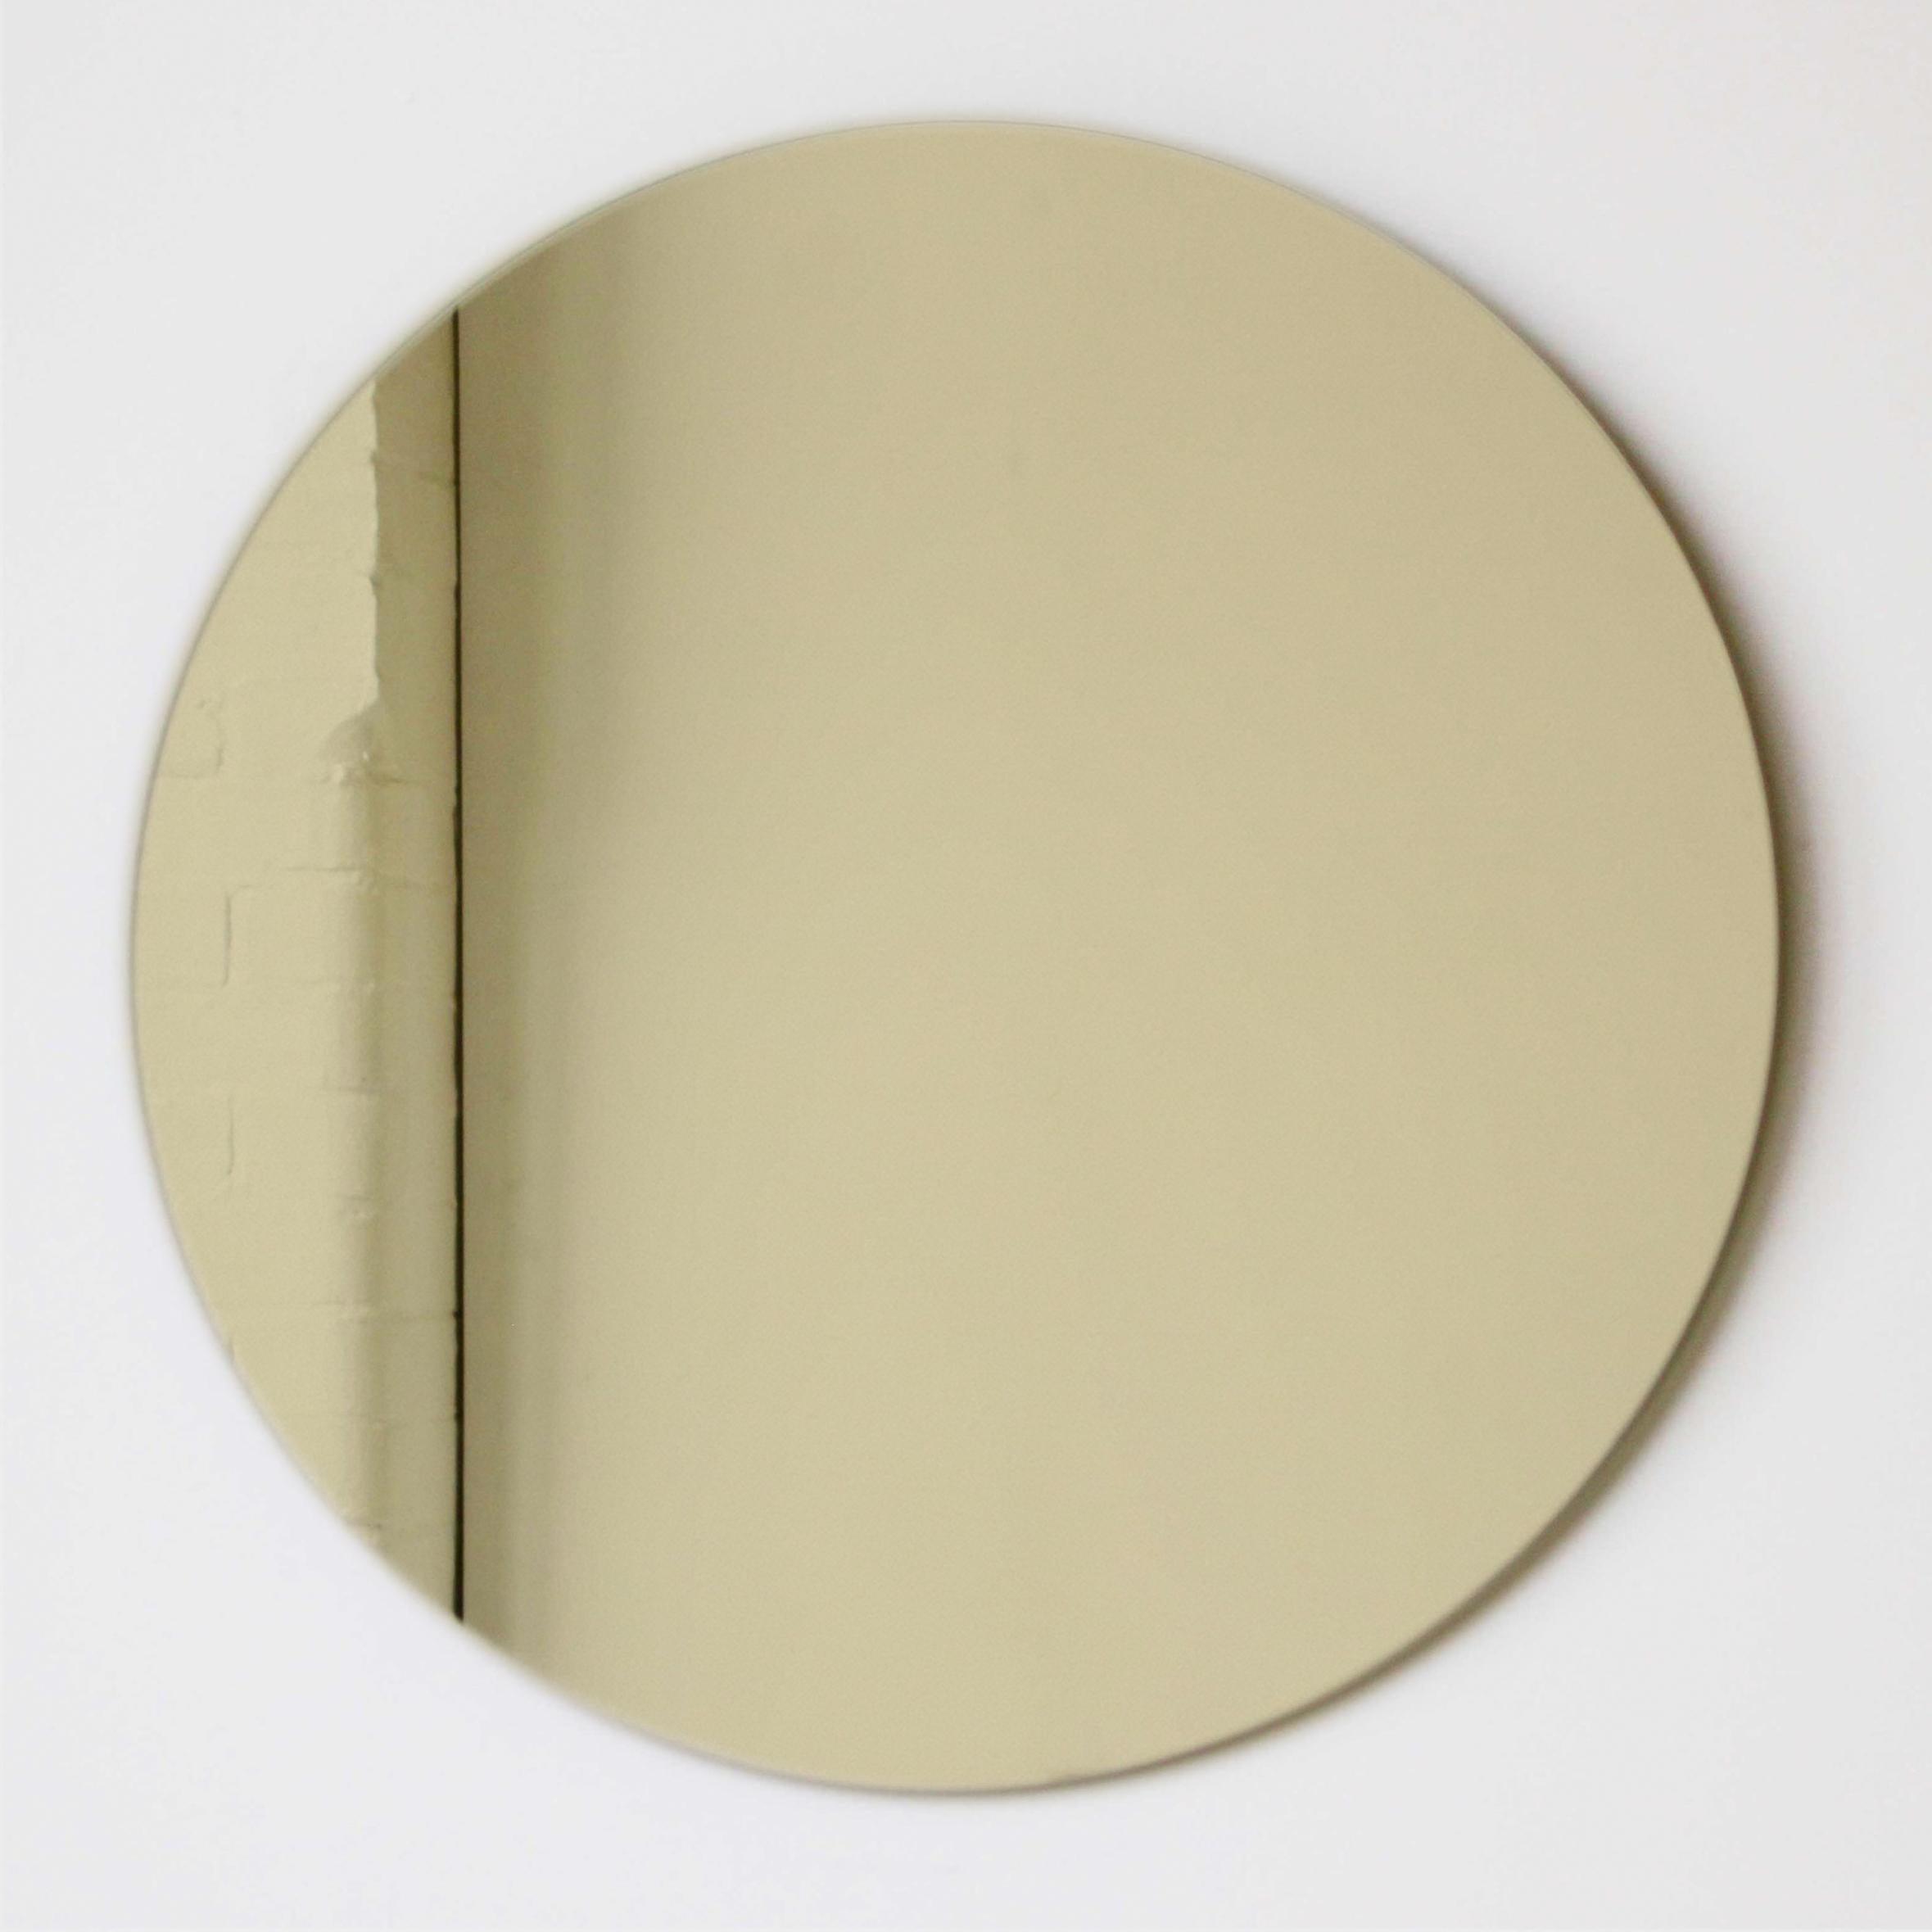 Charmant et minimaliste miroir rond sans cadre teinté d'or avec un effet flottant. Un design de qualité qui garantit que le miroir est parfaitement parallèle au mur. Conçu et fabriqué à Londres, au Royaume-Uni.

Equipé de plaques professionnelles